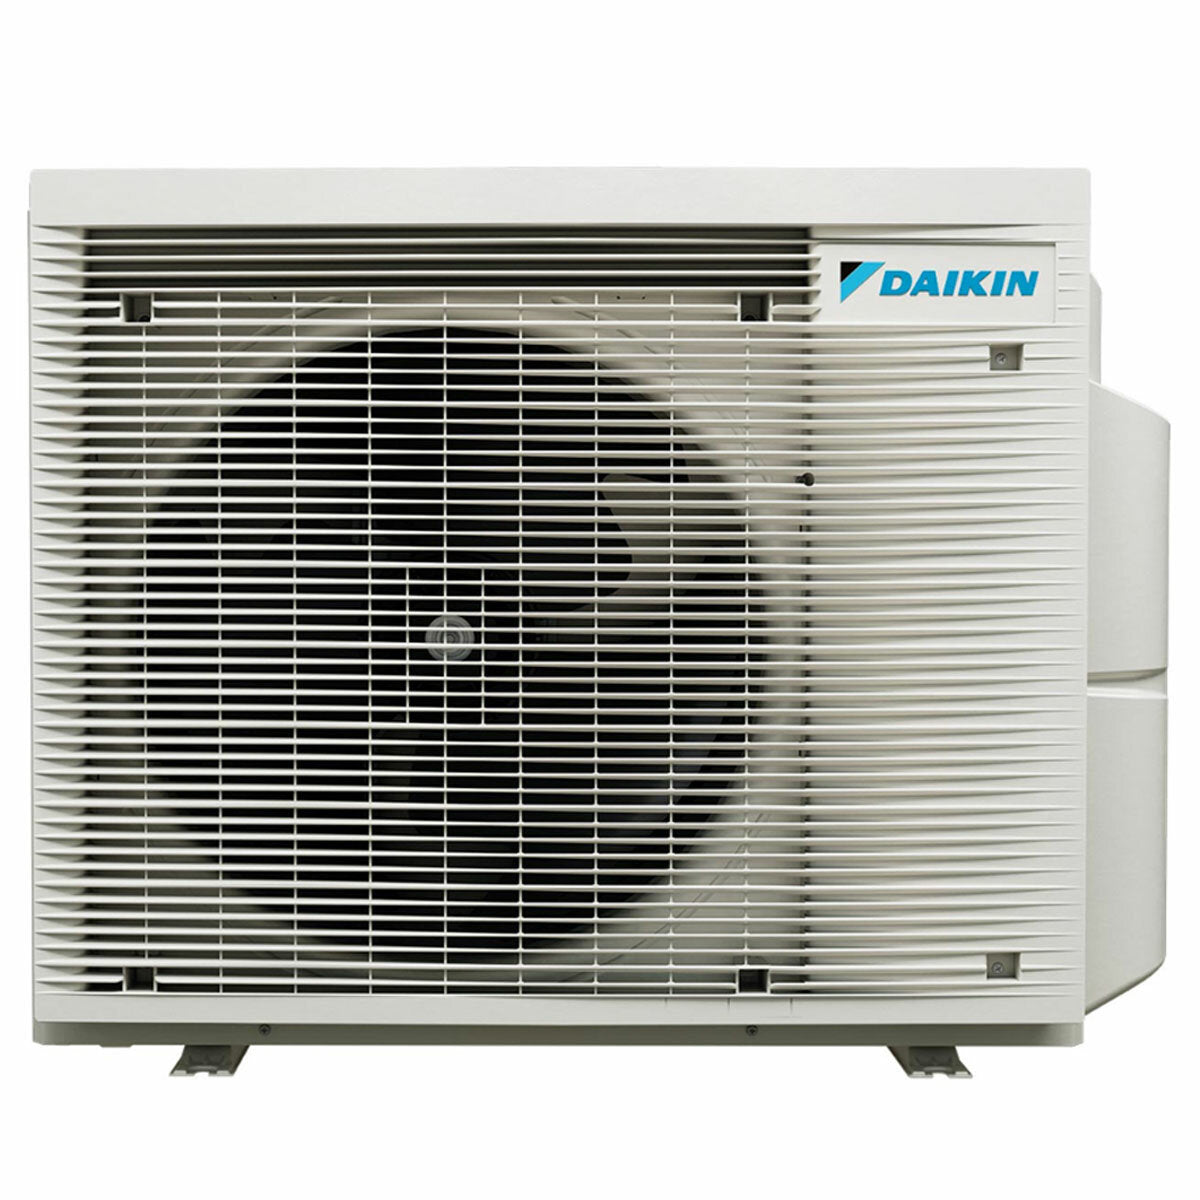 Daikin Emura air conditioner 3 split panels 7000+9000+9000+12000 BTU inverter A+ wifi outdoor unit 6.8 kW White